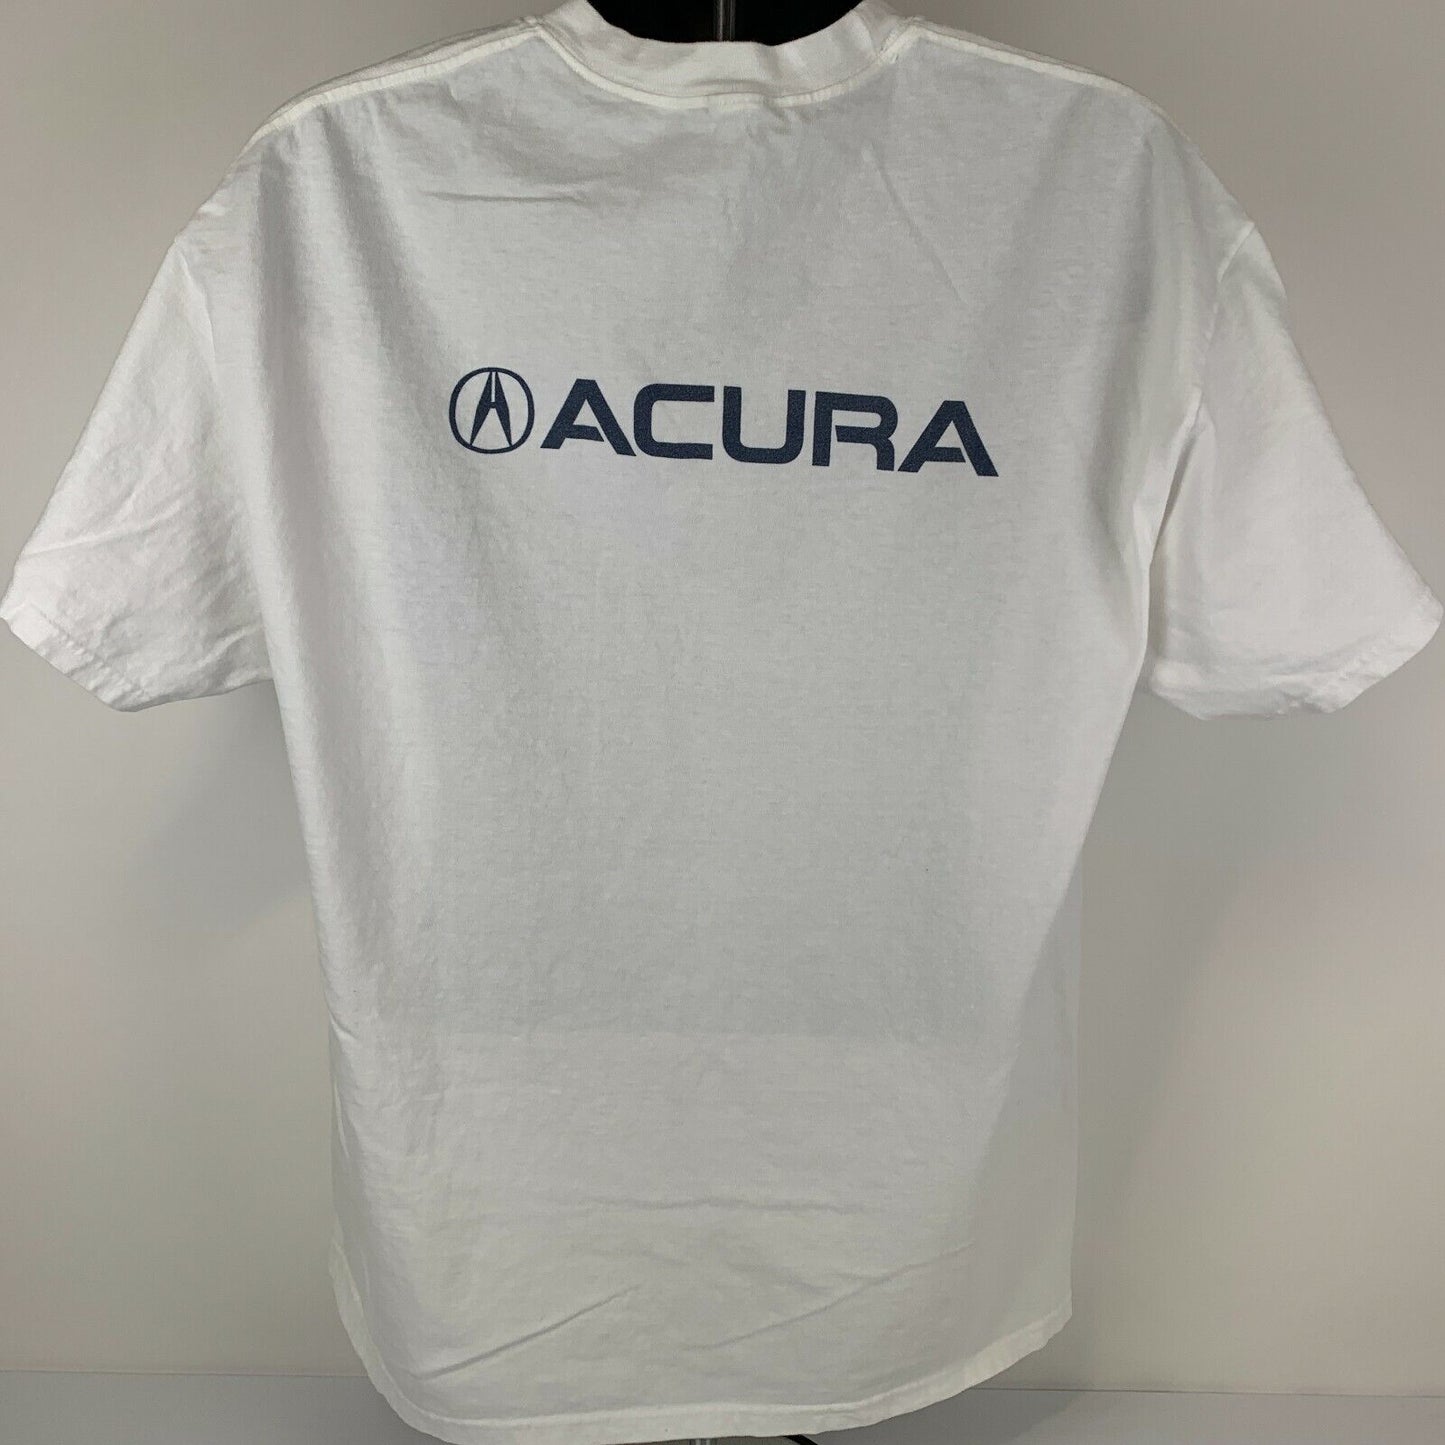 Acura LA Bike Tour T Shirt X-Large Los Angeles Marathon Bicycle Race Mens White